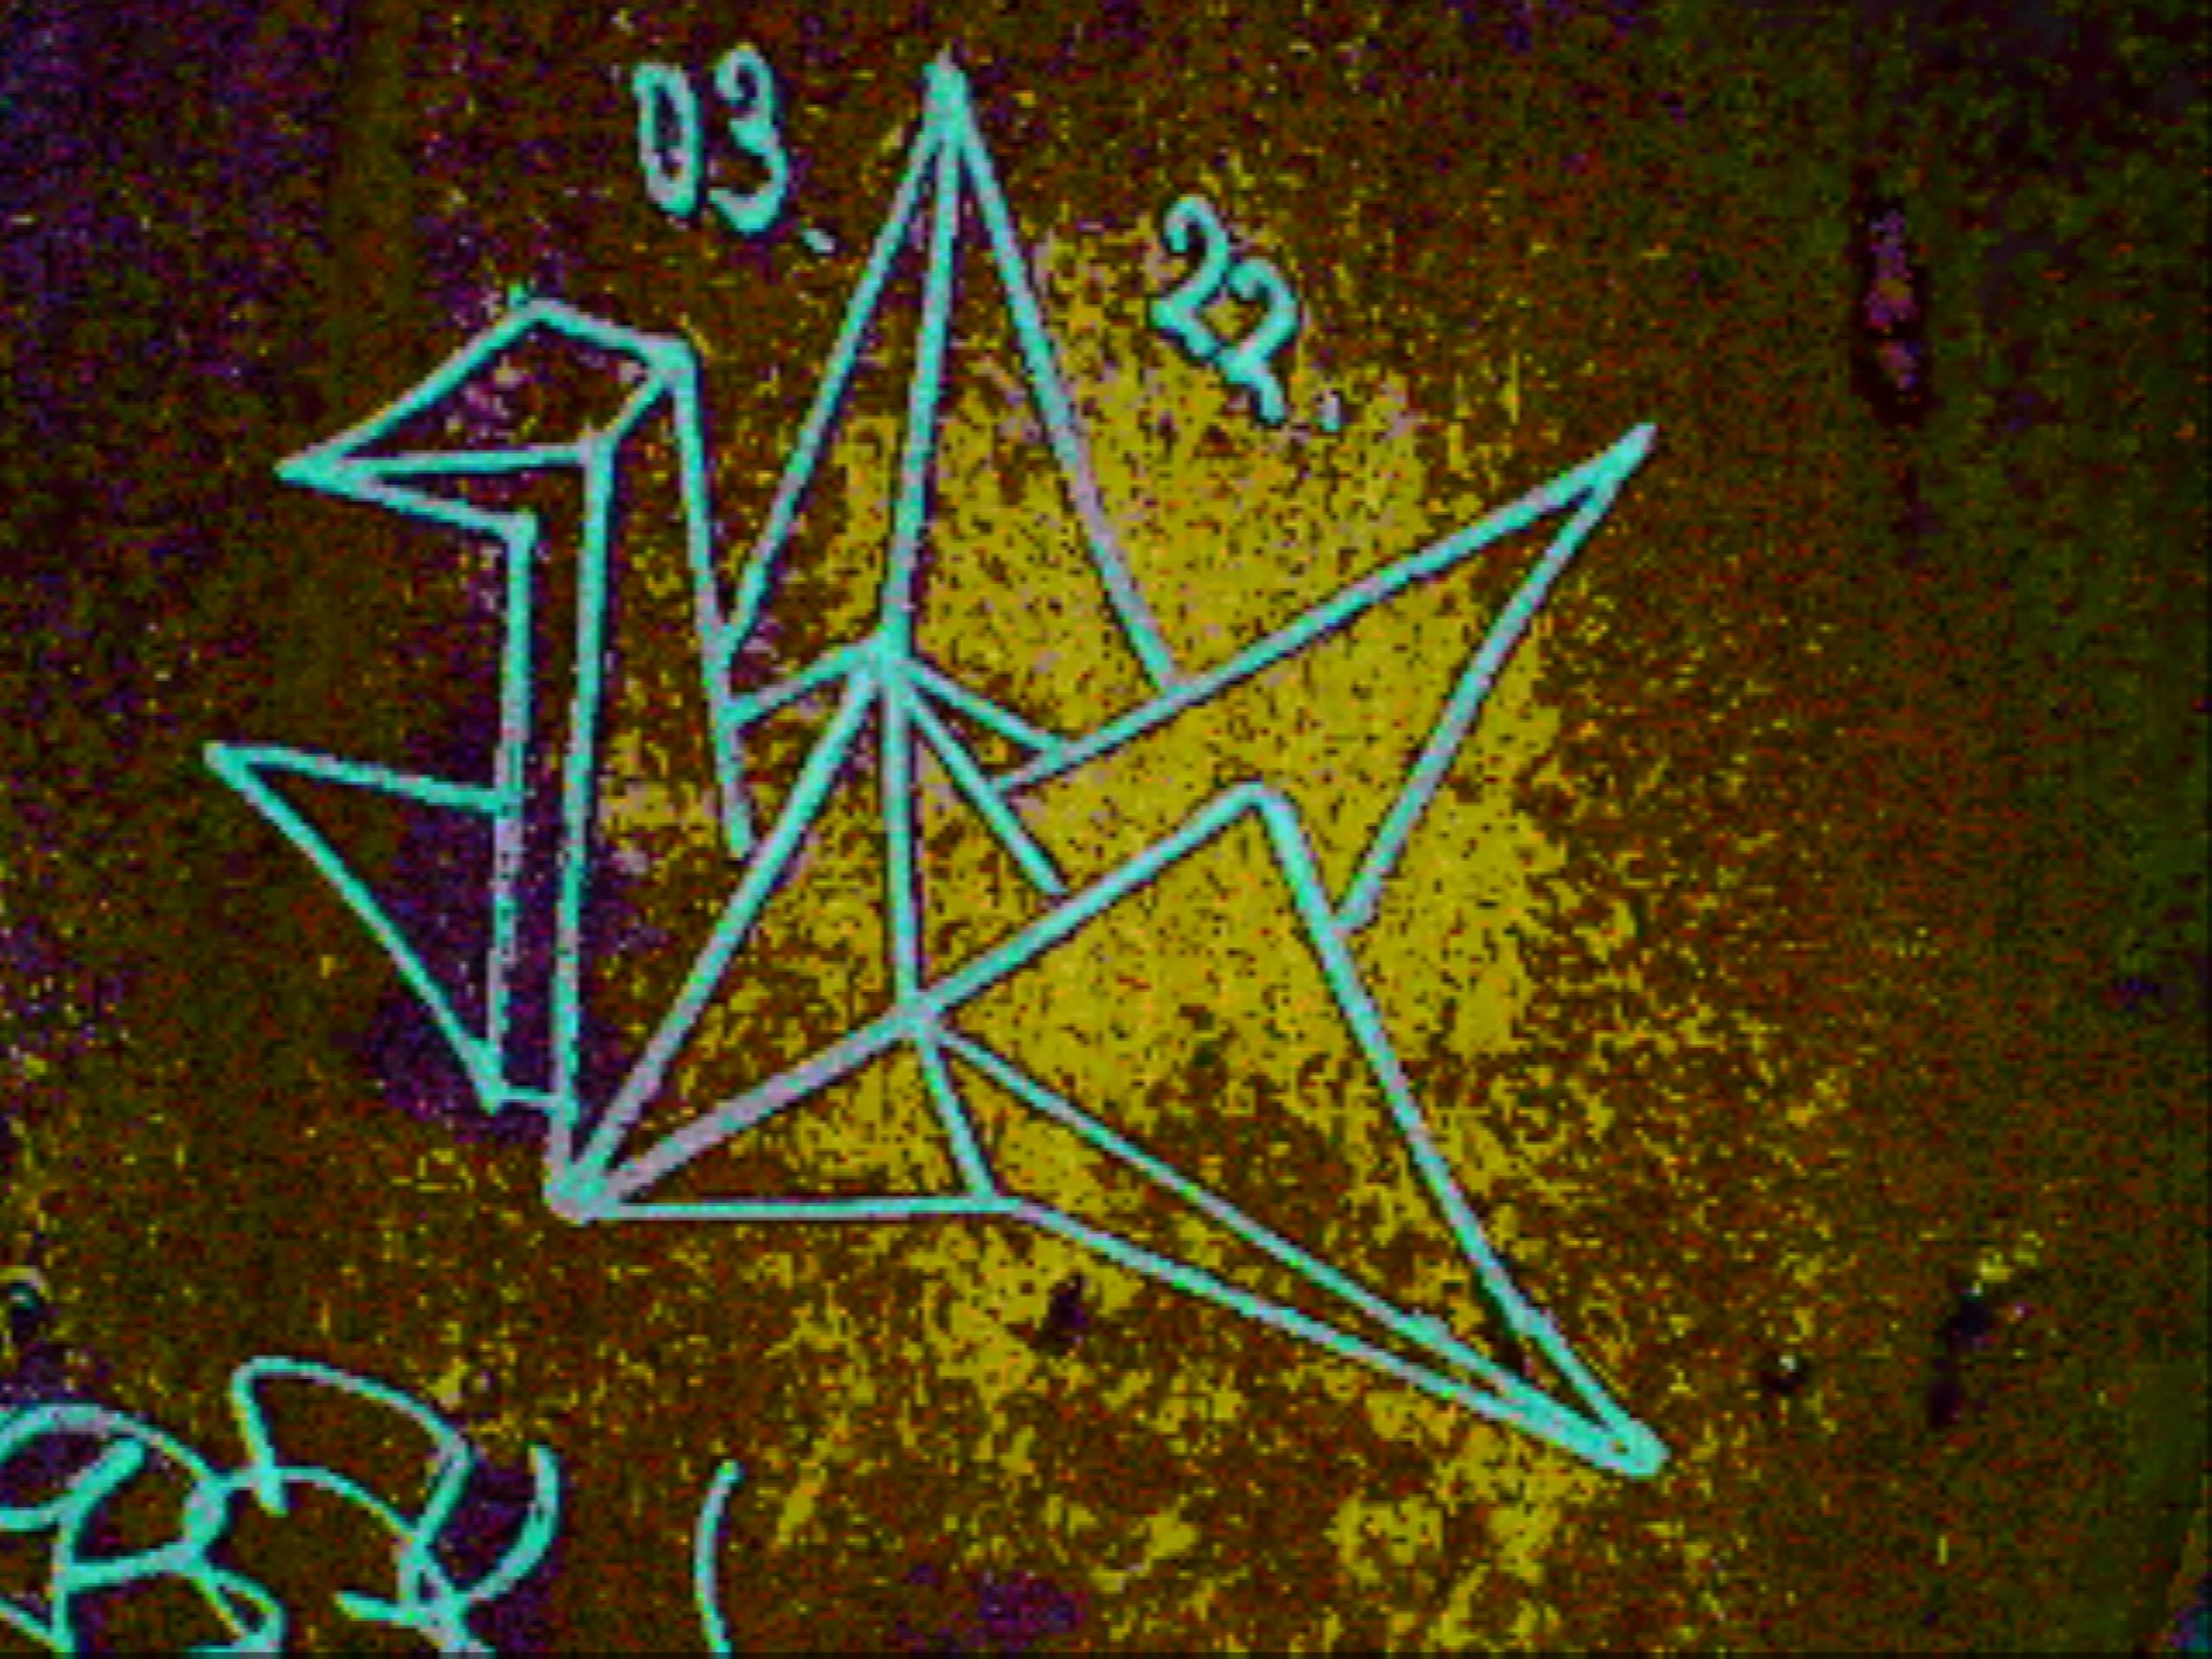 A sample glitch camera image taken of a graffiti crane